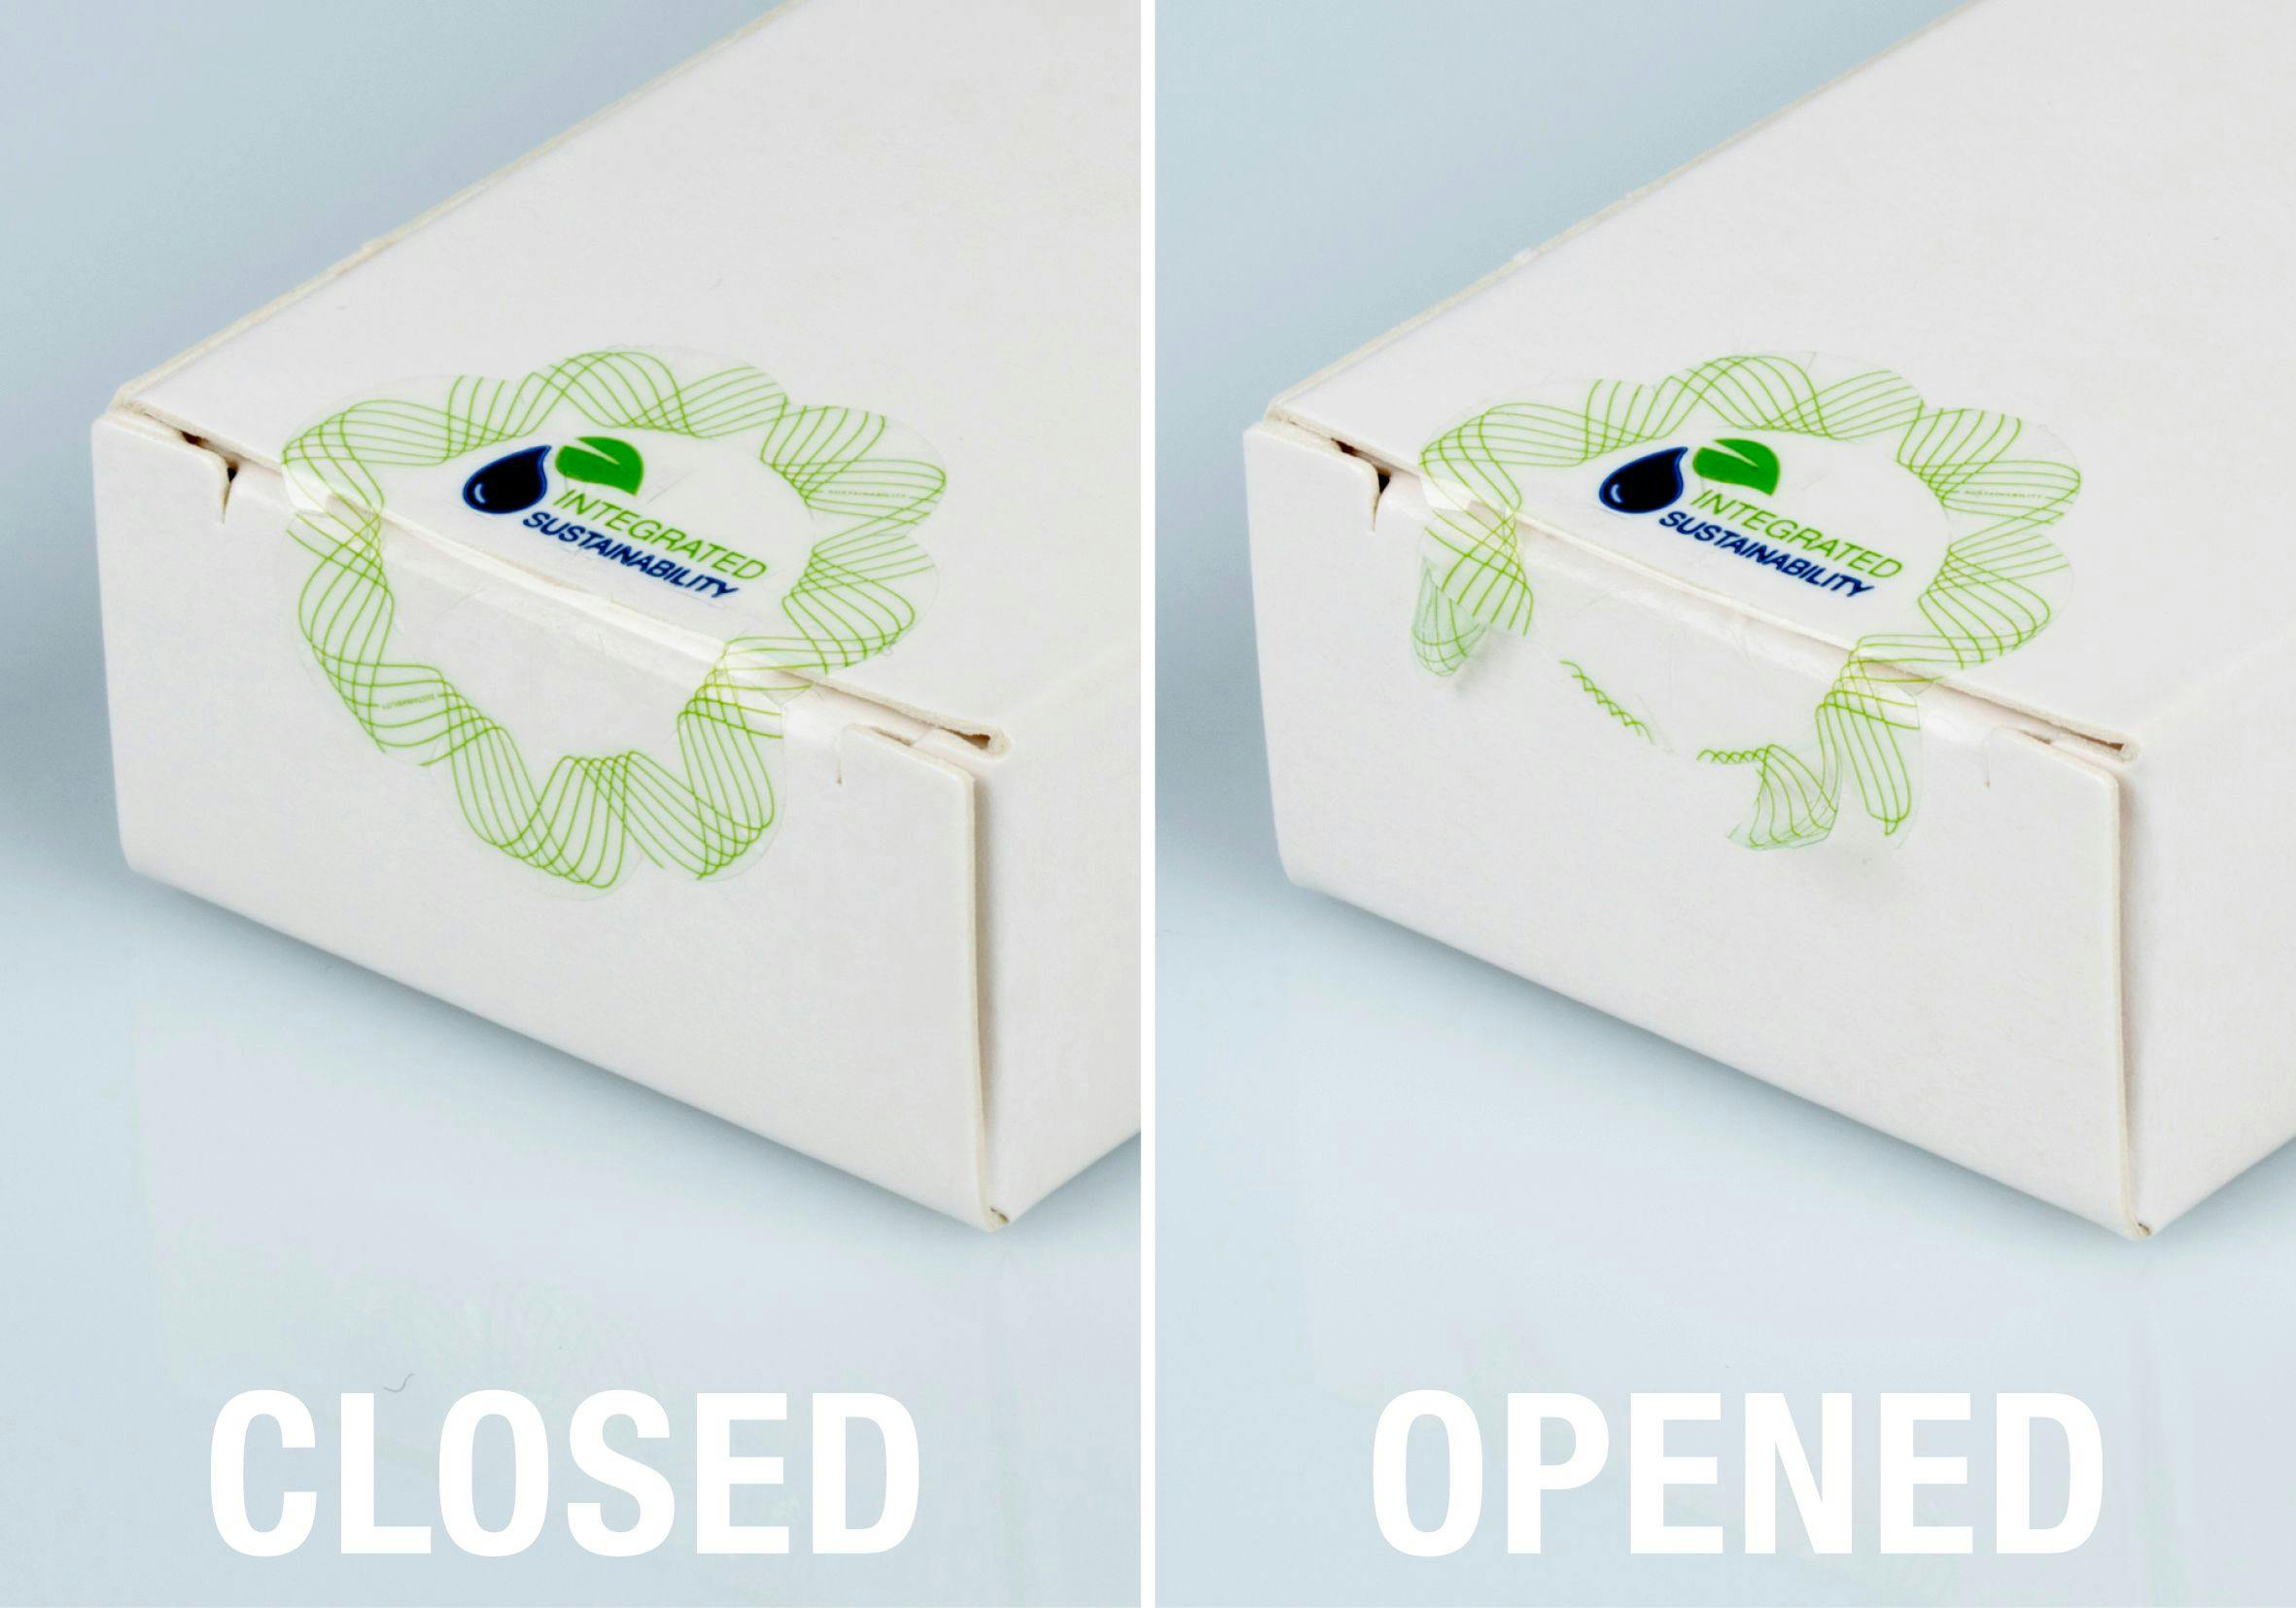 Schreiner MediPharm's sustainable closure seals. Image Credit: Schreiner MediPharm